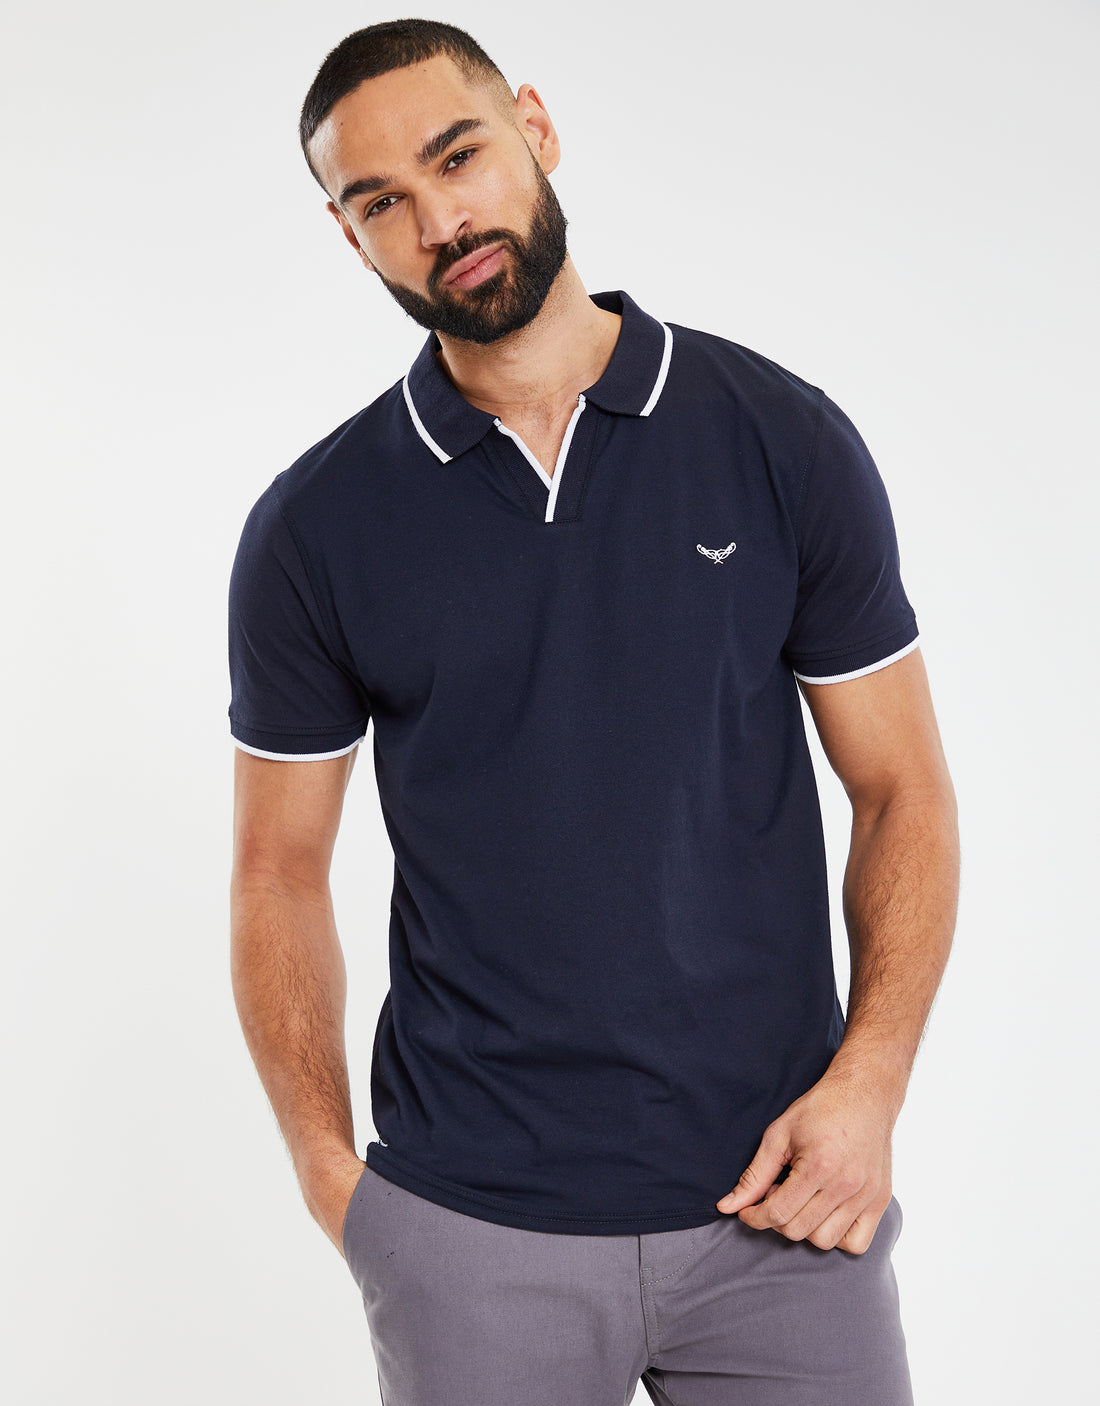 Men's Navy Blue Open Neck Collar Single Jersey Short Sleeve Polo Shirt ...